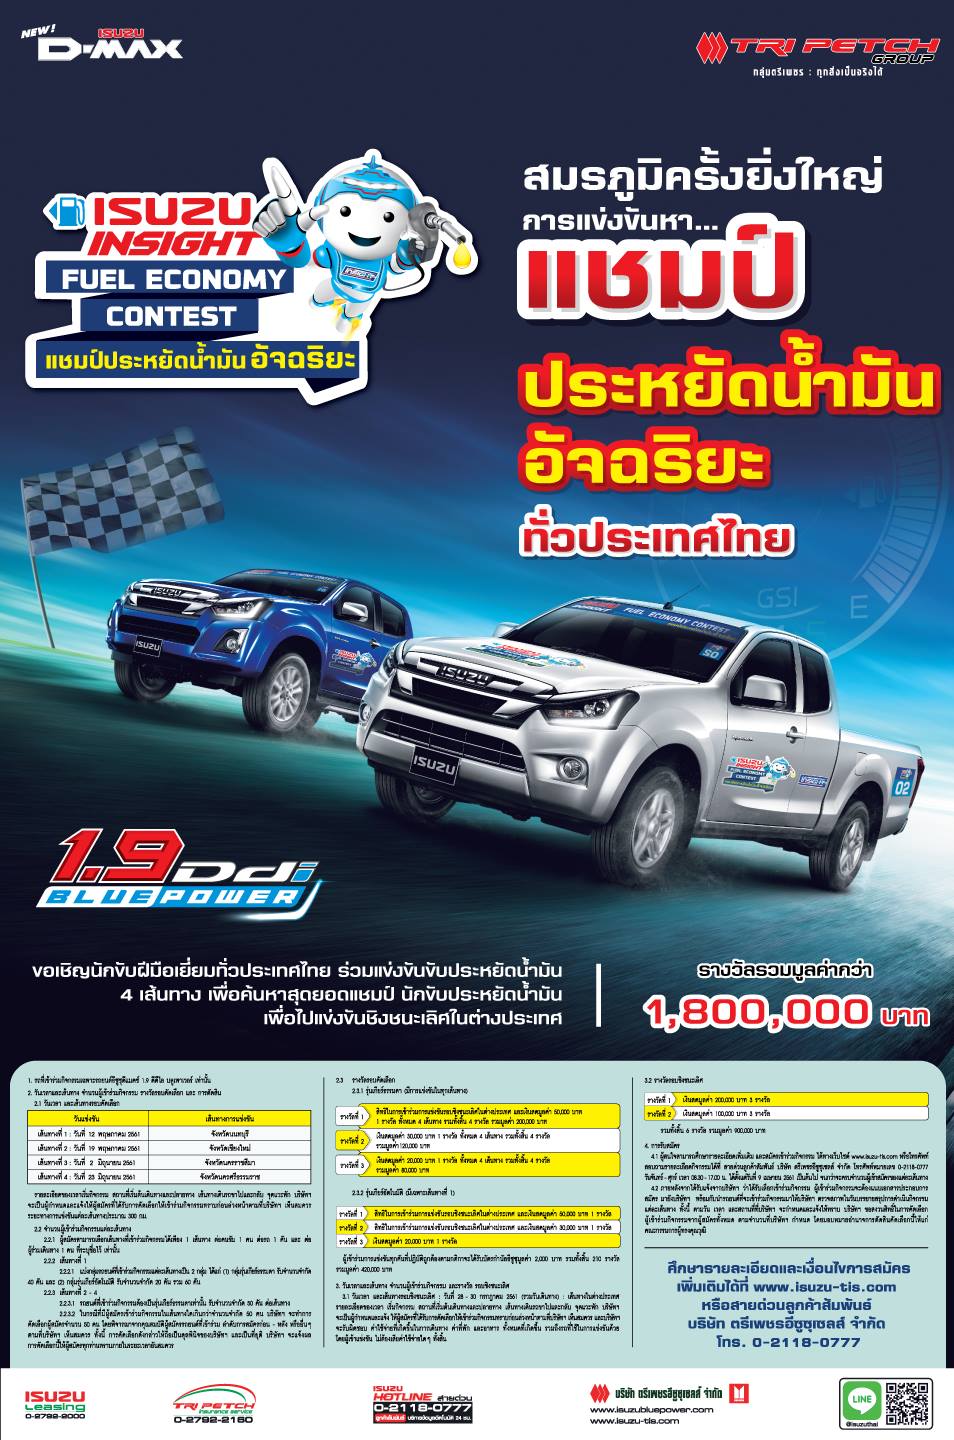 ขอเชิญนักขับฝีมือเยี่ยมทั่วประเทศไทยร่วม แข่งขันขับประหยัดน้ำมัน เพื่อค้นหาสุดยอด แชมป์นักขับประหยัดน้ำมันชิงรางวัลรวม มูลค่ากว่า 1,800,000 บาท